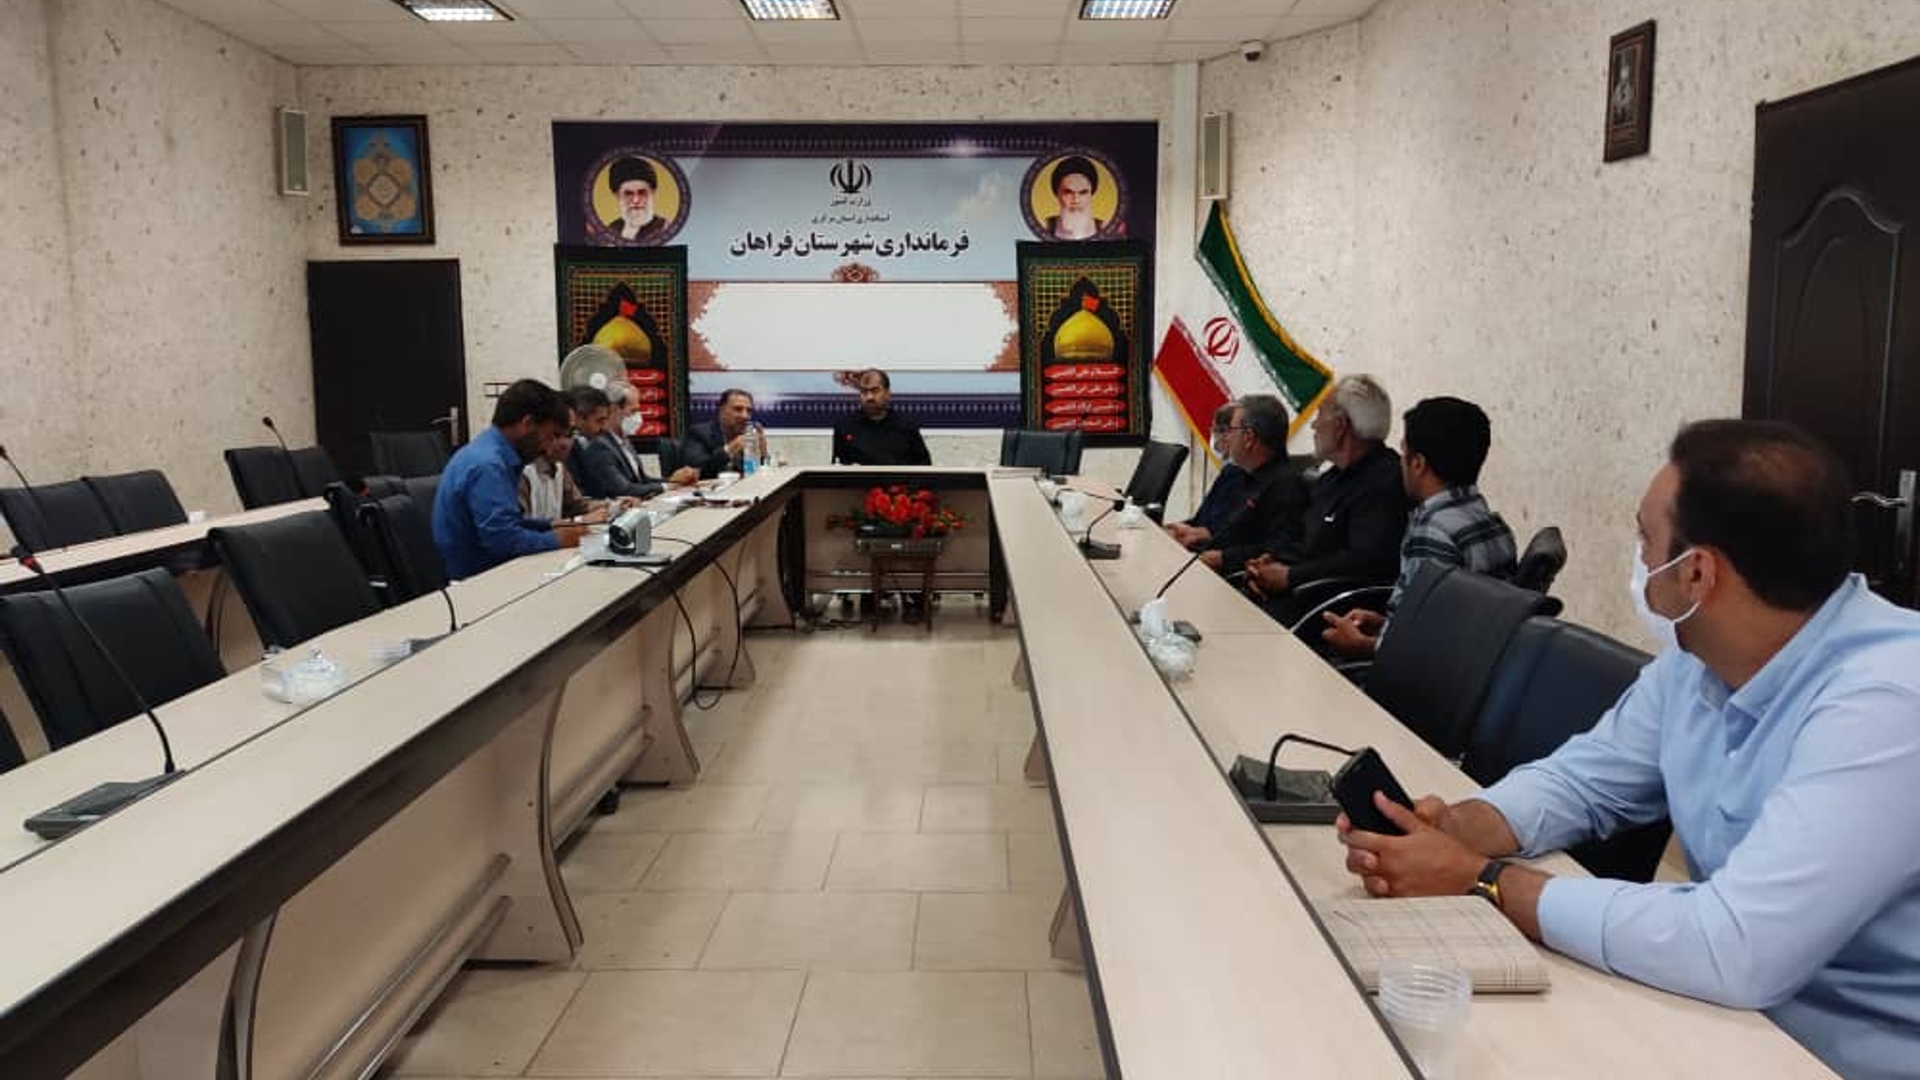 جلسه ی همکاری و هم افزایی کلیه دستگاه های اجرایی شهرستان فراهان در خصوص مدیریت بحران